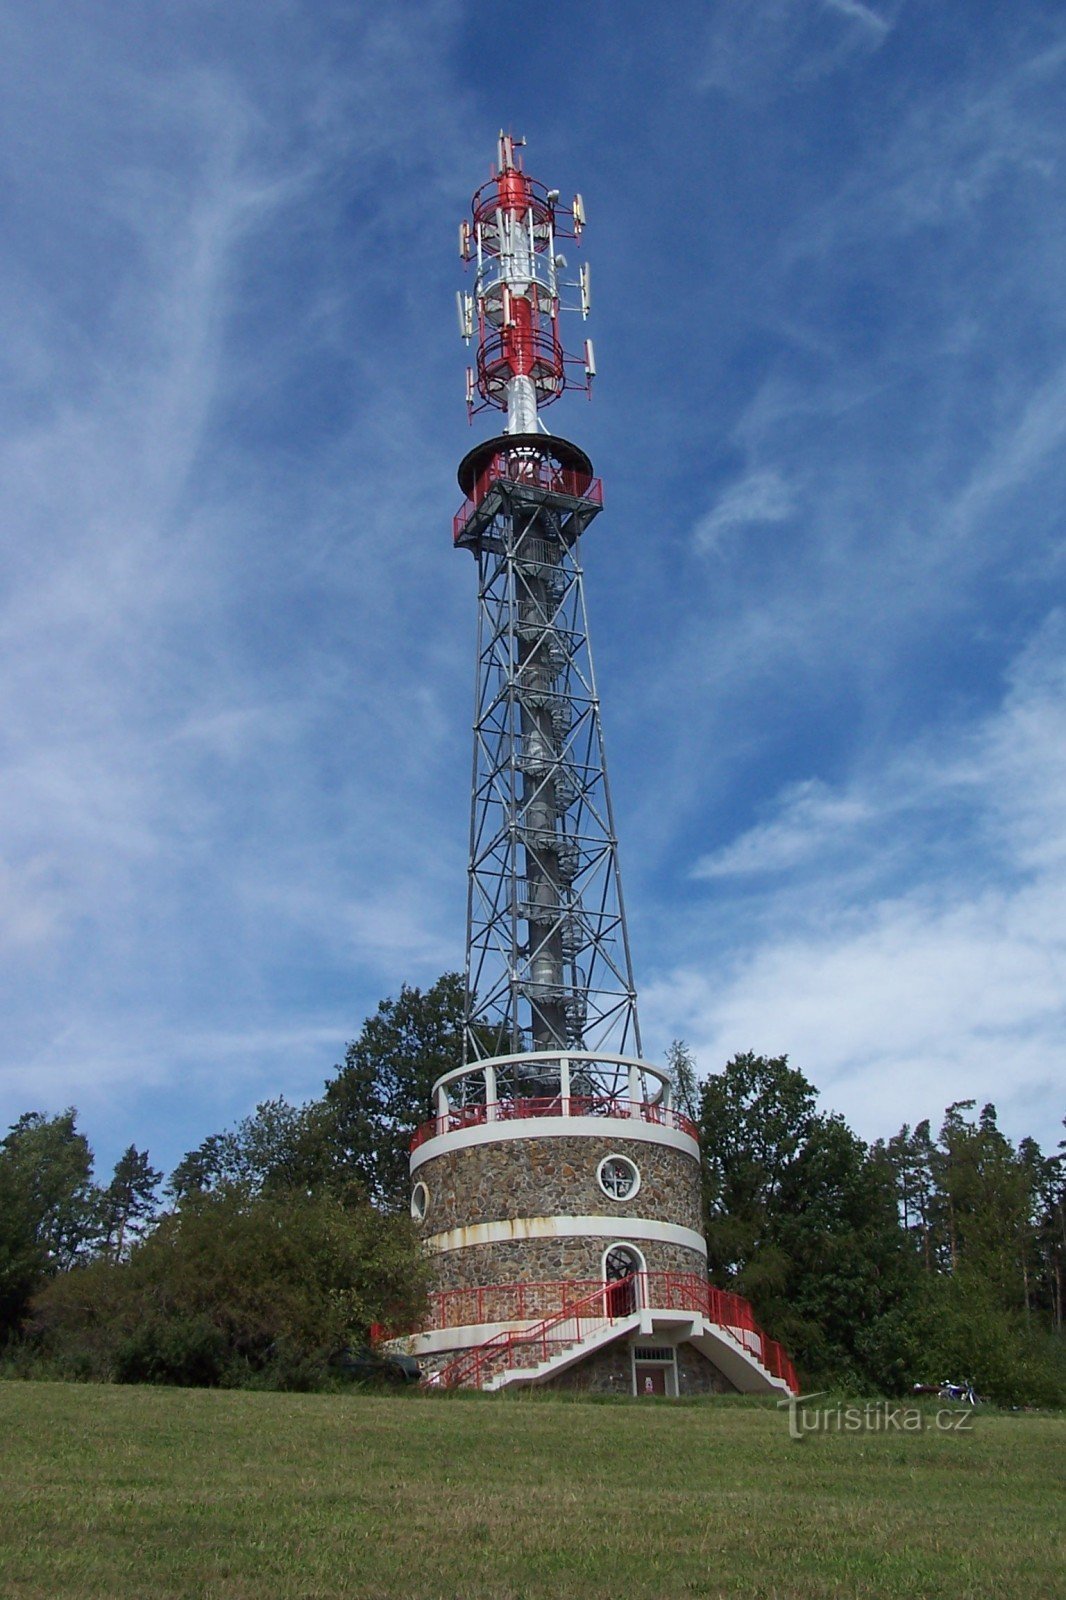 Kuníček observationstårn